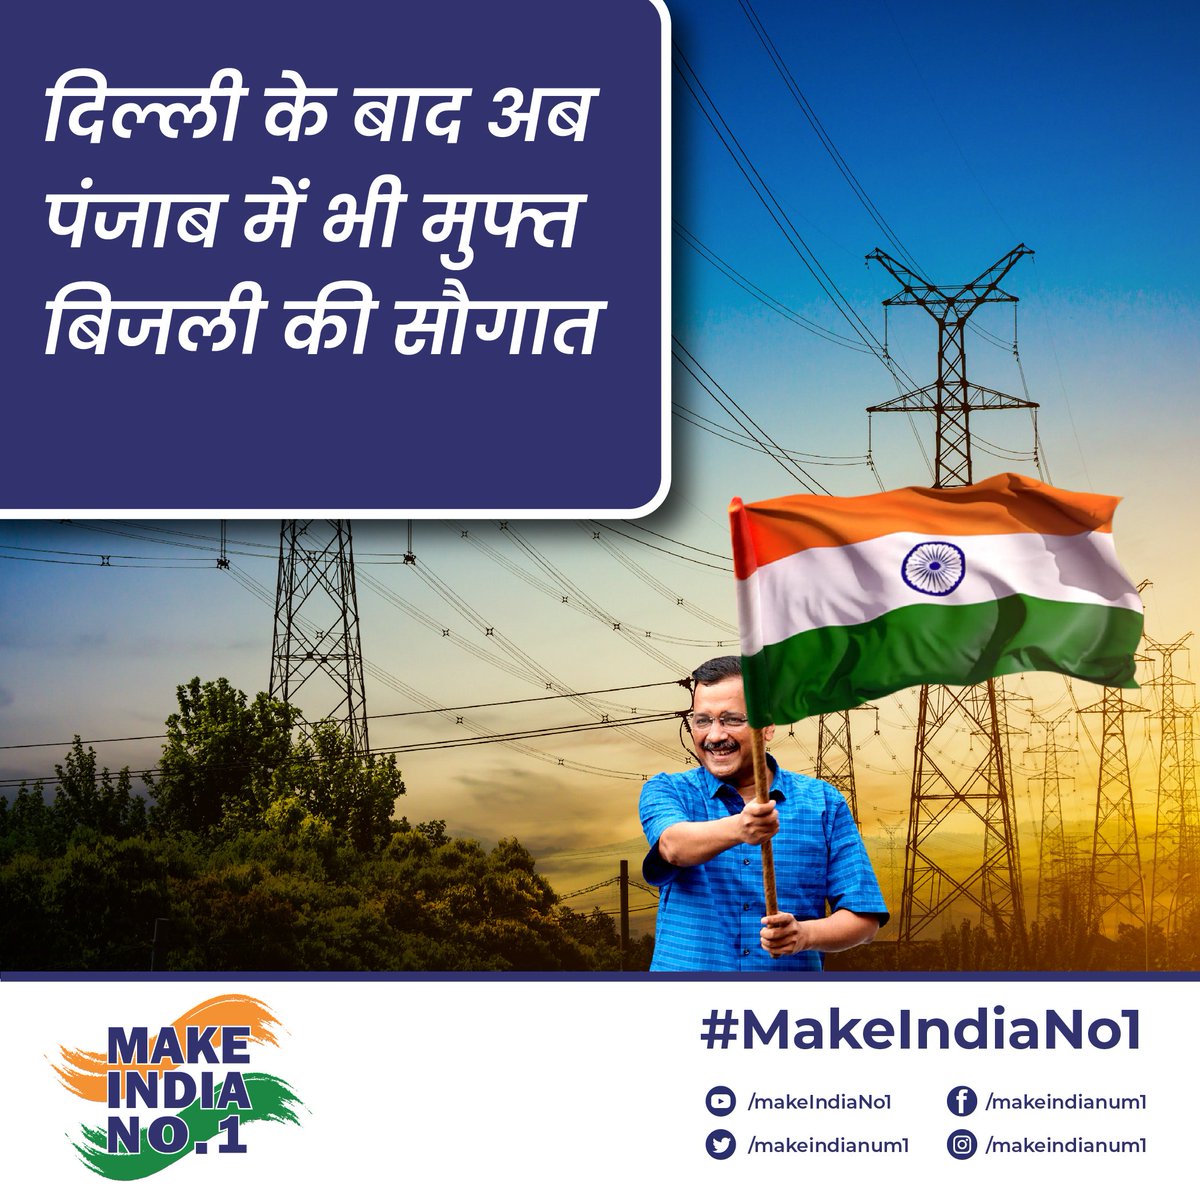 जनहित और जनकल्याण के आदर्शों वाली दिल्ली सरकार की राह पर अब पंजाब सरकार ने भी अपनी जनता को फ्री बिजली की सौगात दी है। जब हर एक राज्य होगा काबिल और देगा अपने लोगों को सारी सुविधाएं तभी बनेगा भारत नंबर एक। #MakeIndiaNo1 🇮🇳